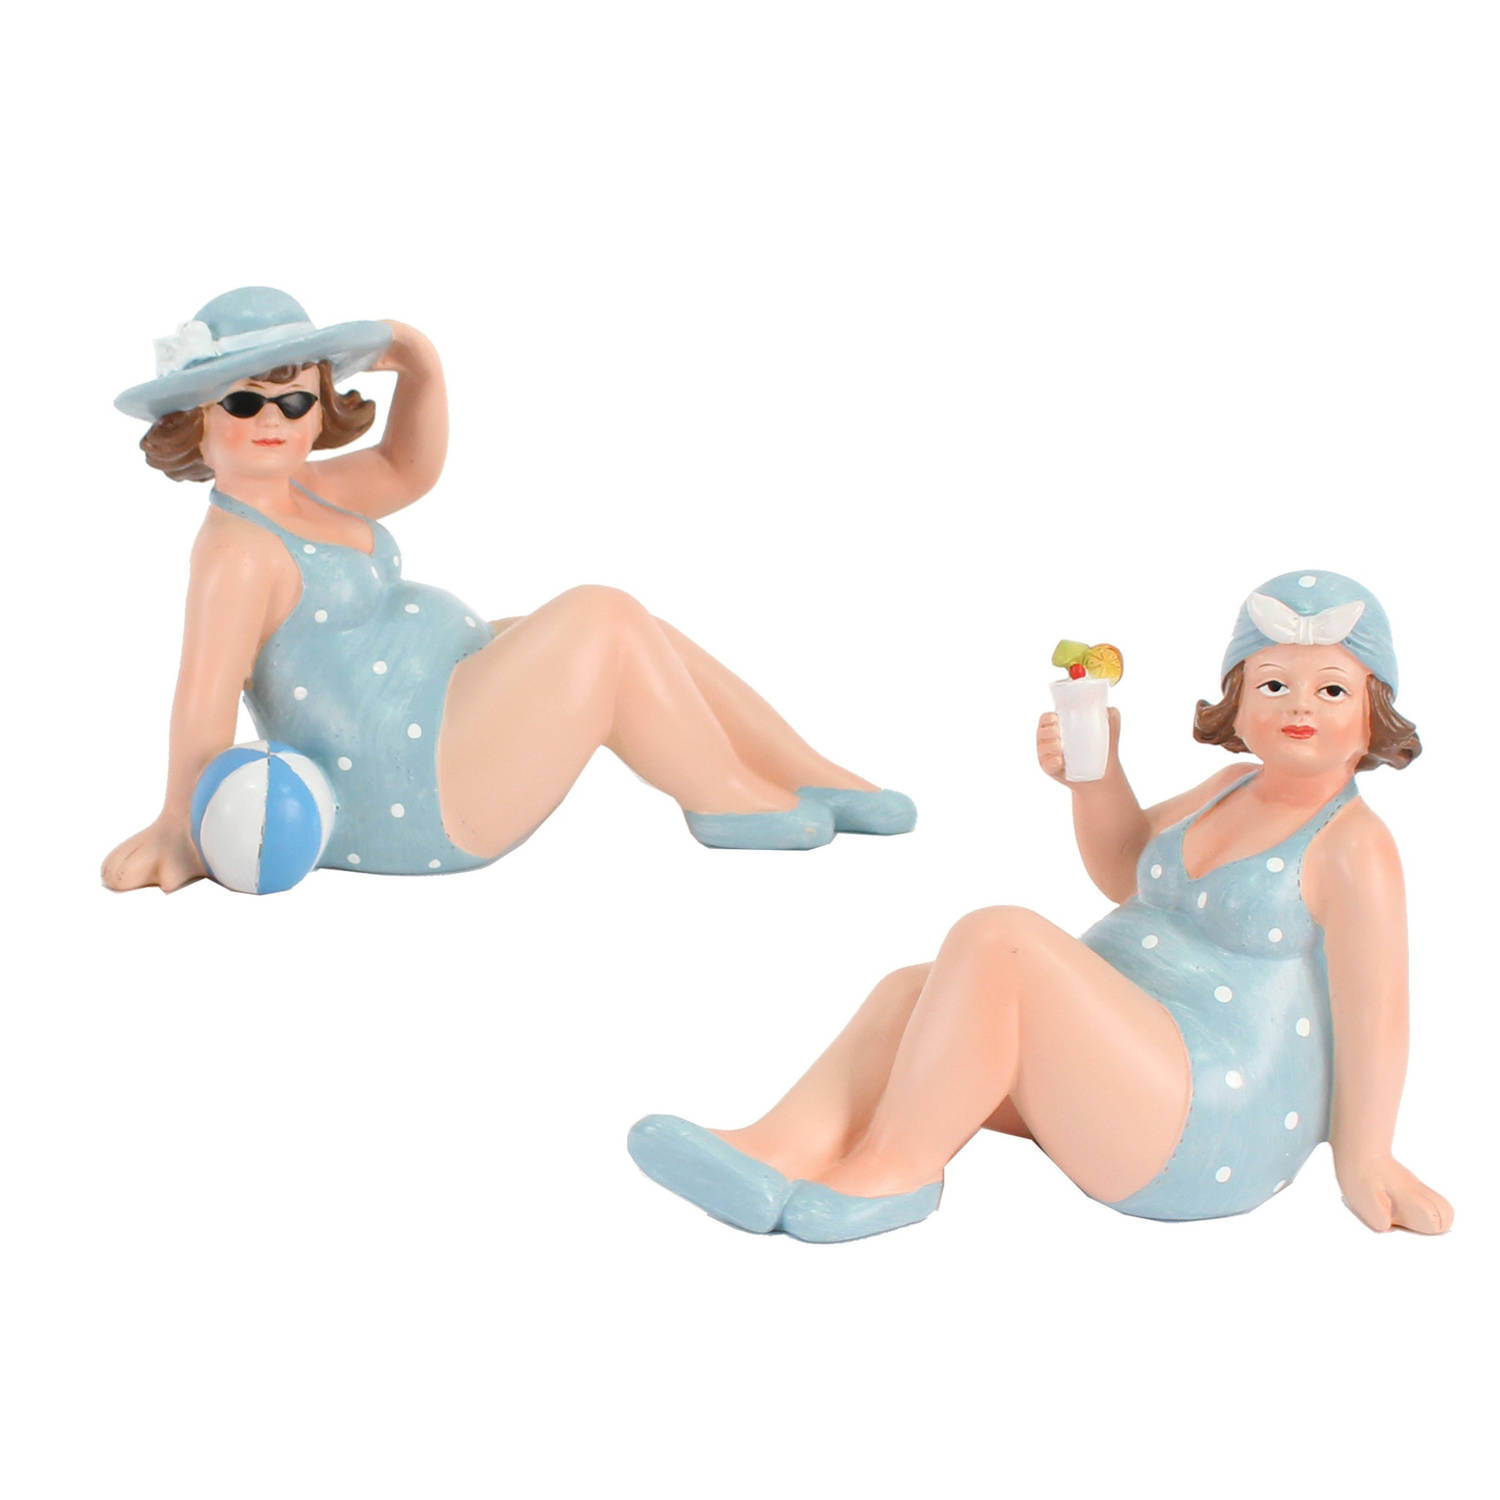 Woonkamer decoratie beeldjes set 2 dikke dames blauw badpak 17 cm Beeldjes